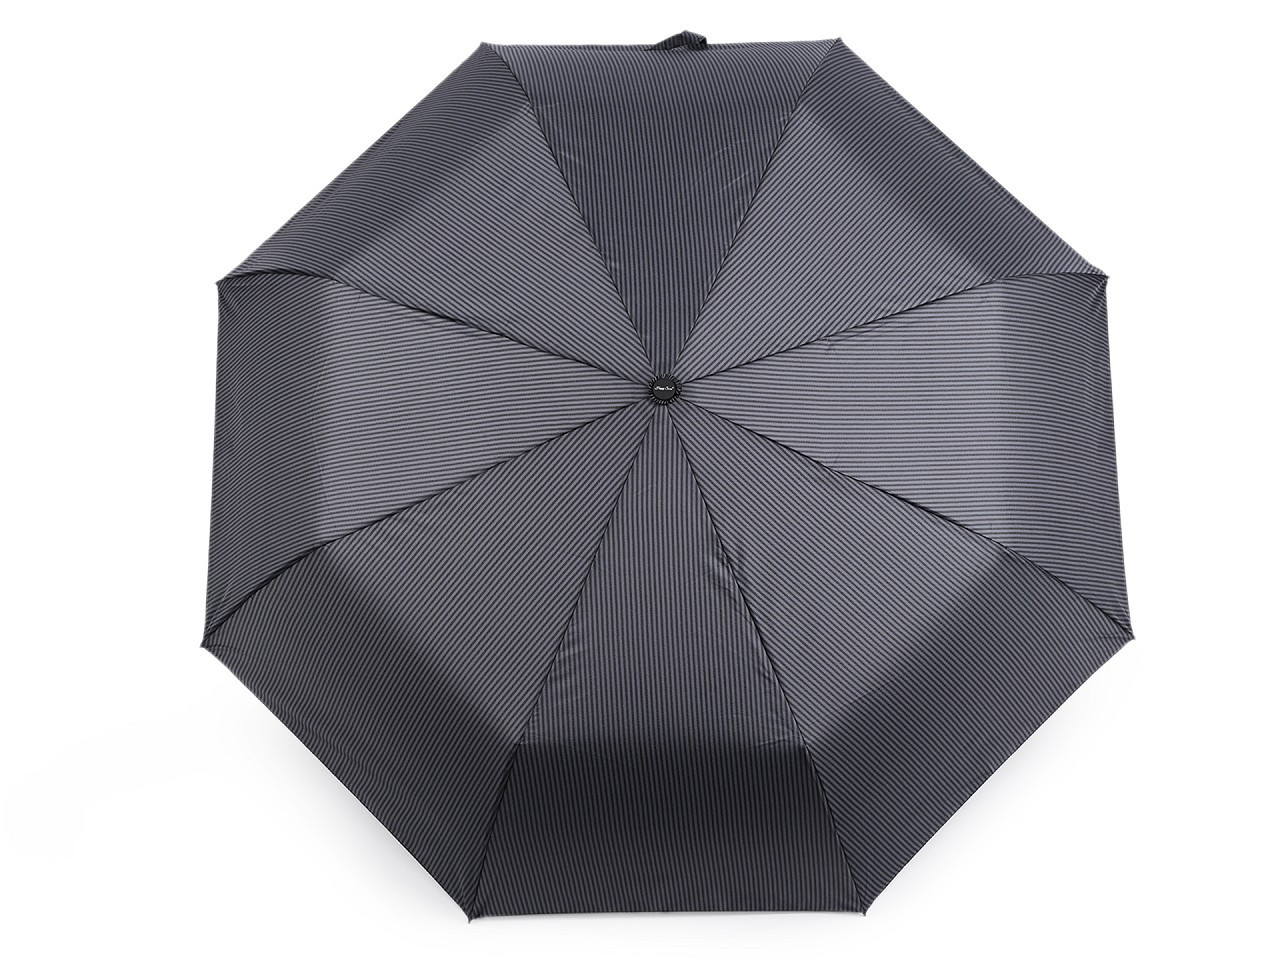 Pánský skládací vystřelovací deštník, barva 2 šedá proužky